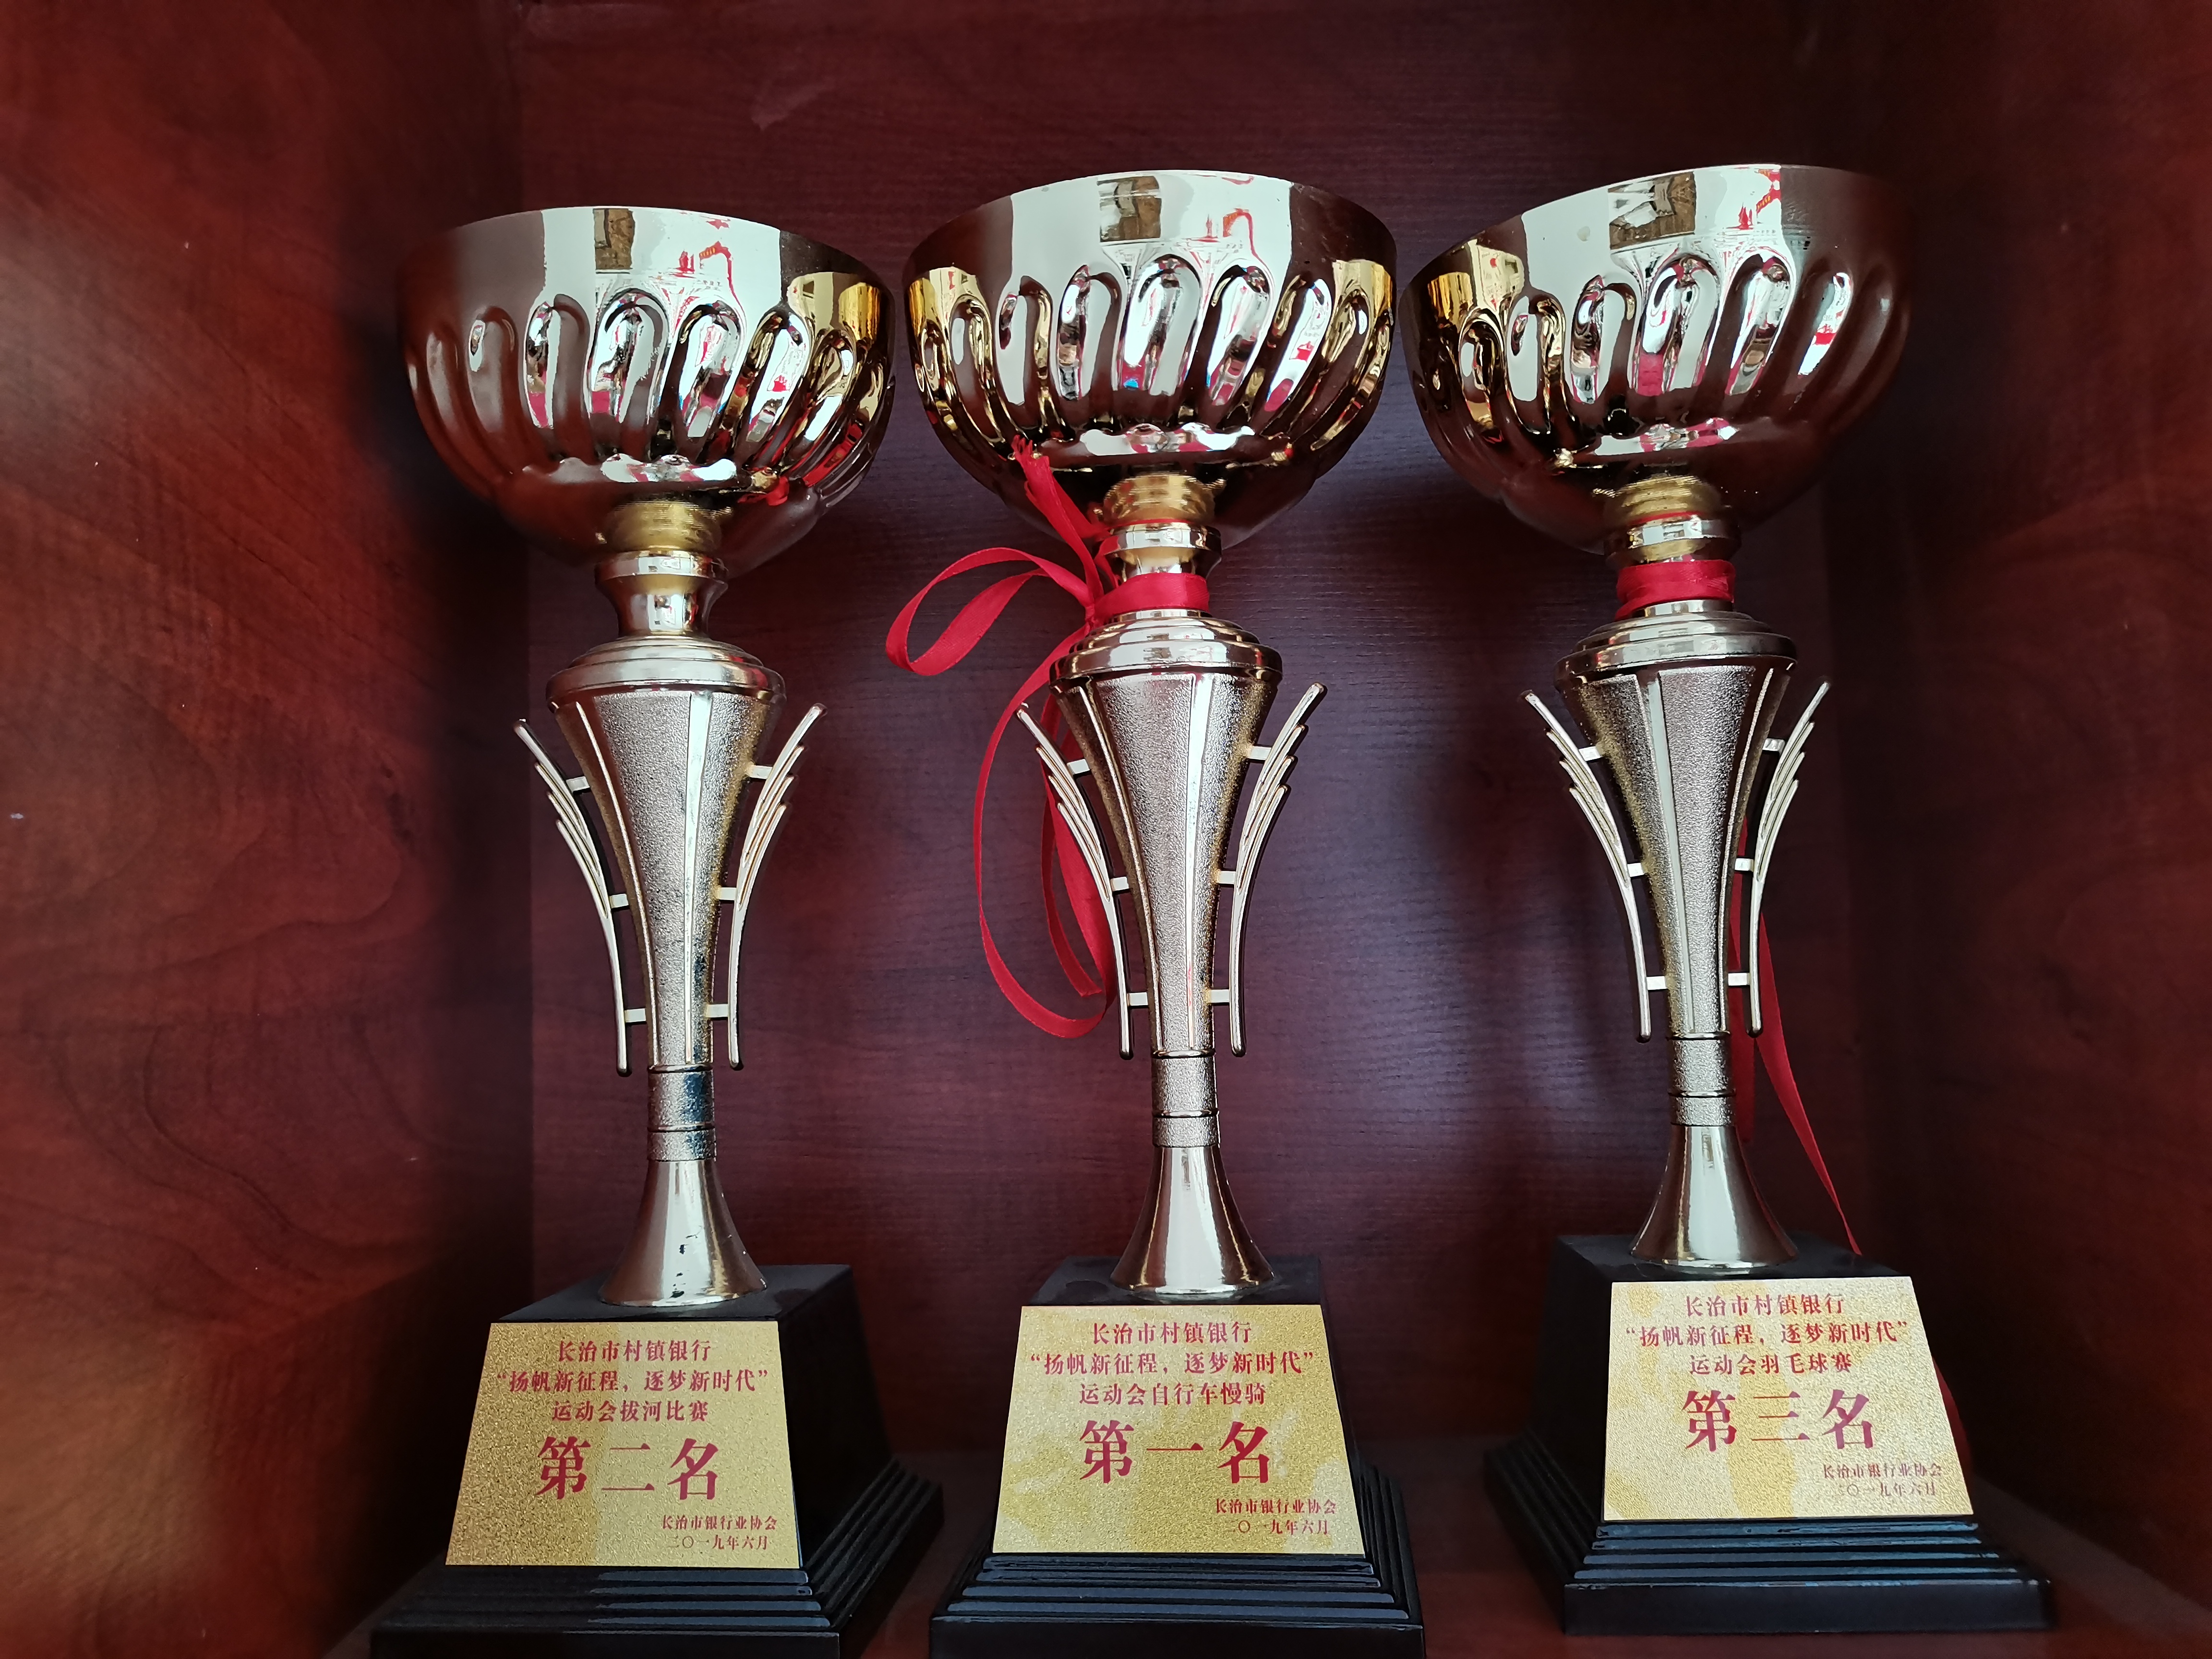 2019年6月 荣获长治市村镇银行“杨帆新征程、逐梦新时代”运动会拔河比赛第二名、自行车慢骑第一名、羽毛球赛第三名